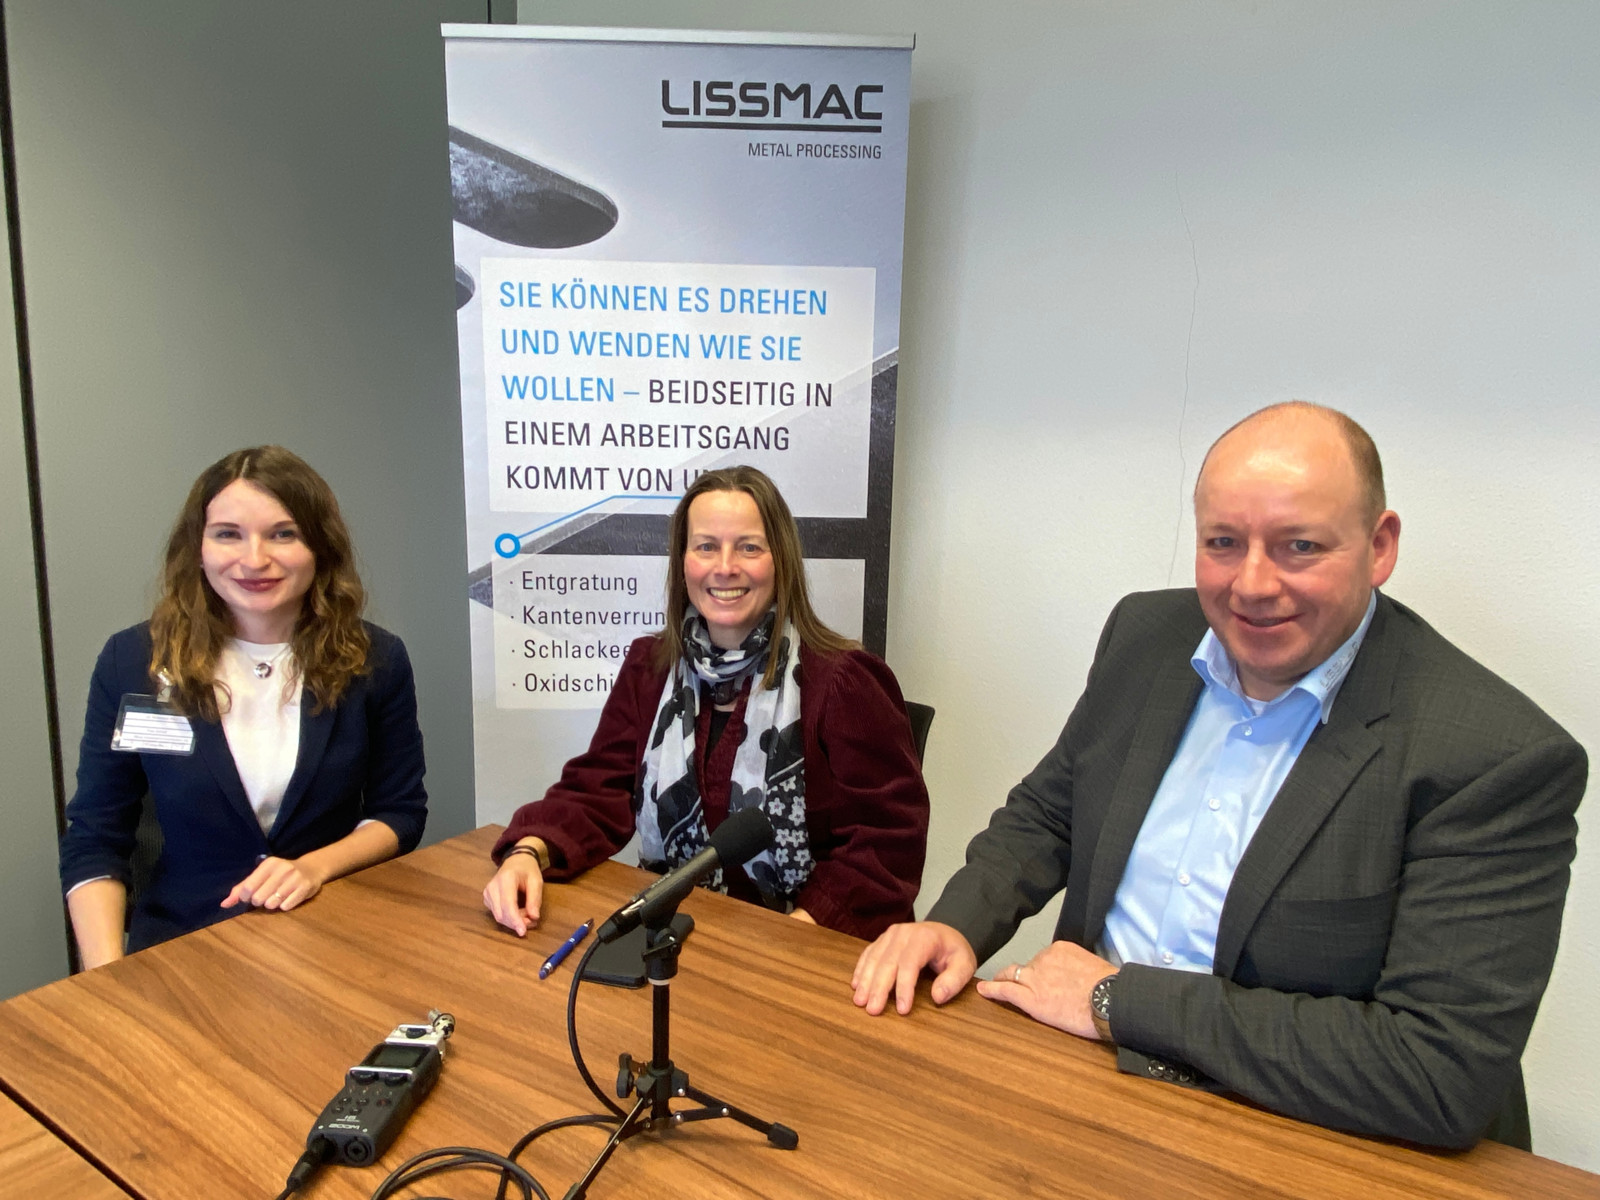 Bei einem Besuch in Bad Wurzach sprach BLECH-Redakteurin Sarah Schulz (links) mit Robert Dimmler, Sales Director bei Lissmac (rechts), und Annedore Bose-Munde, Fachredakteurin, über die geplanten Änderungen.